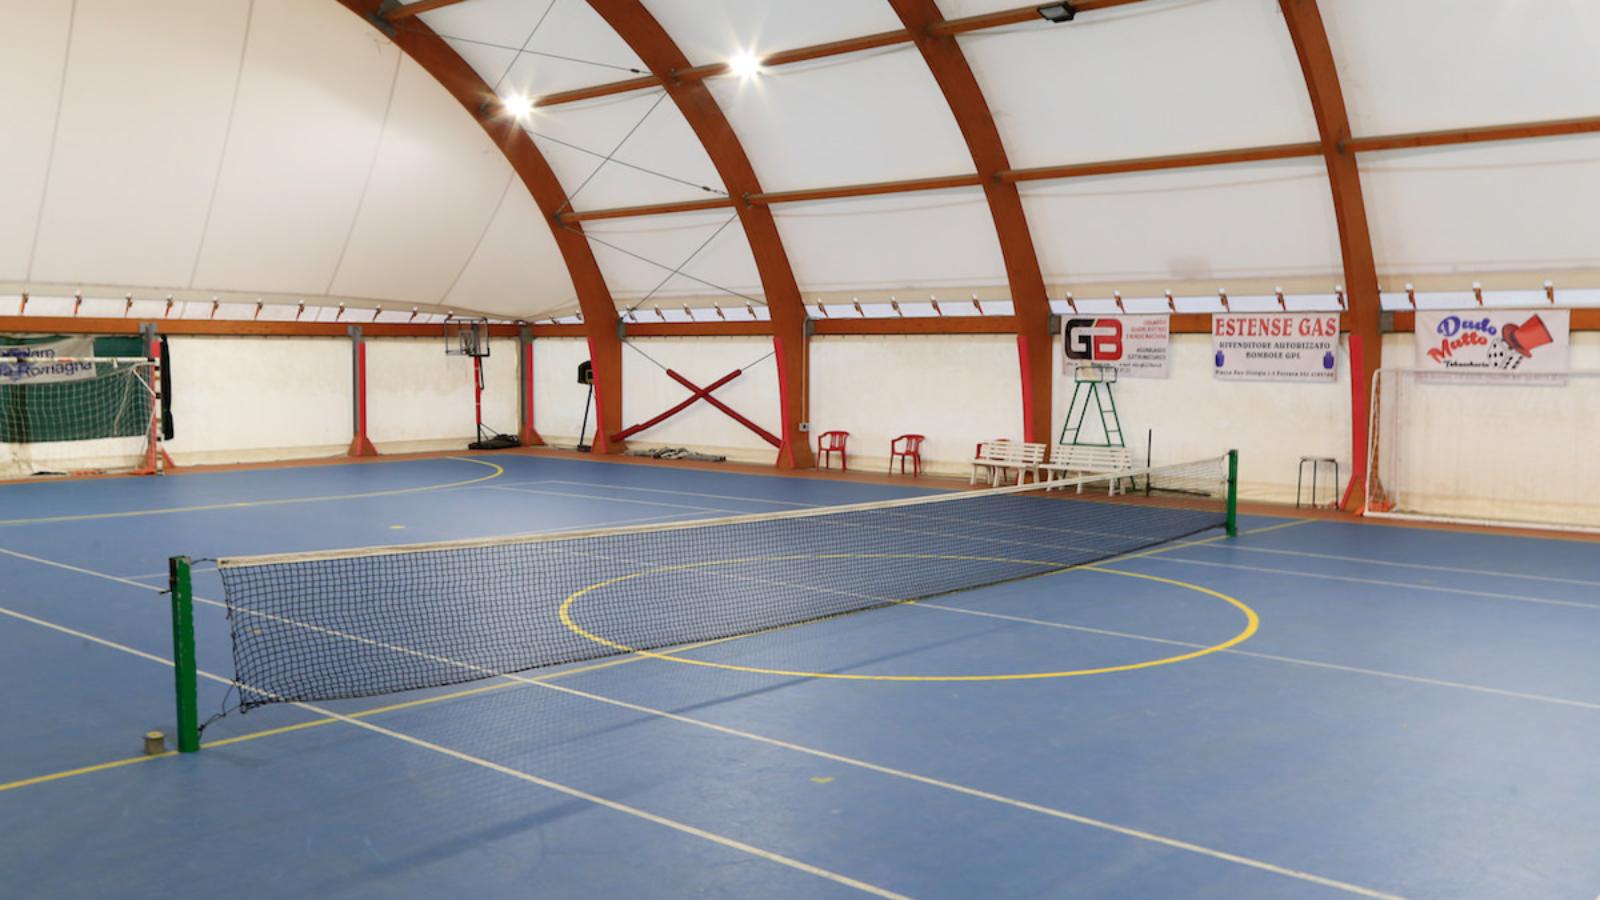 Centro sportivo di Minerbio - foto via https://tennisandfun.it/minerbio/